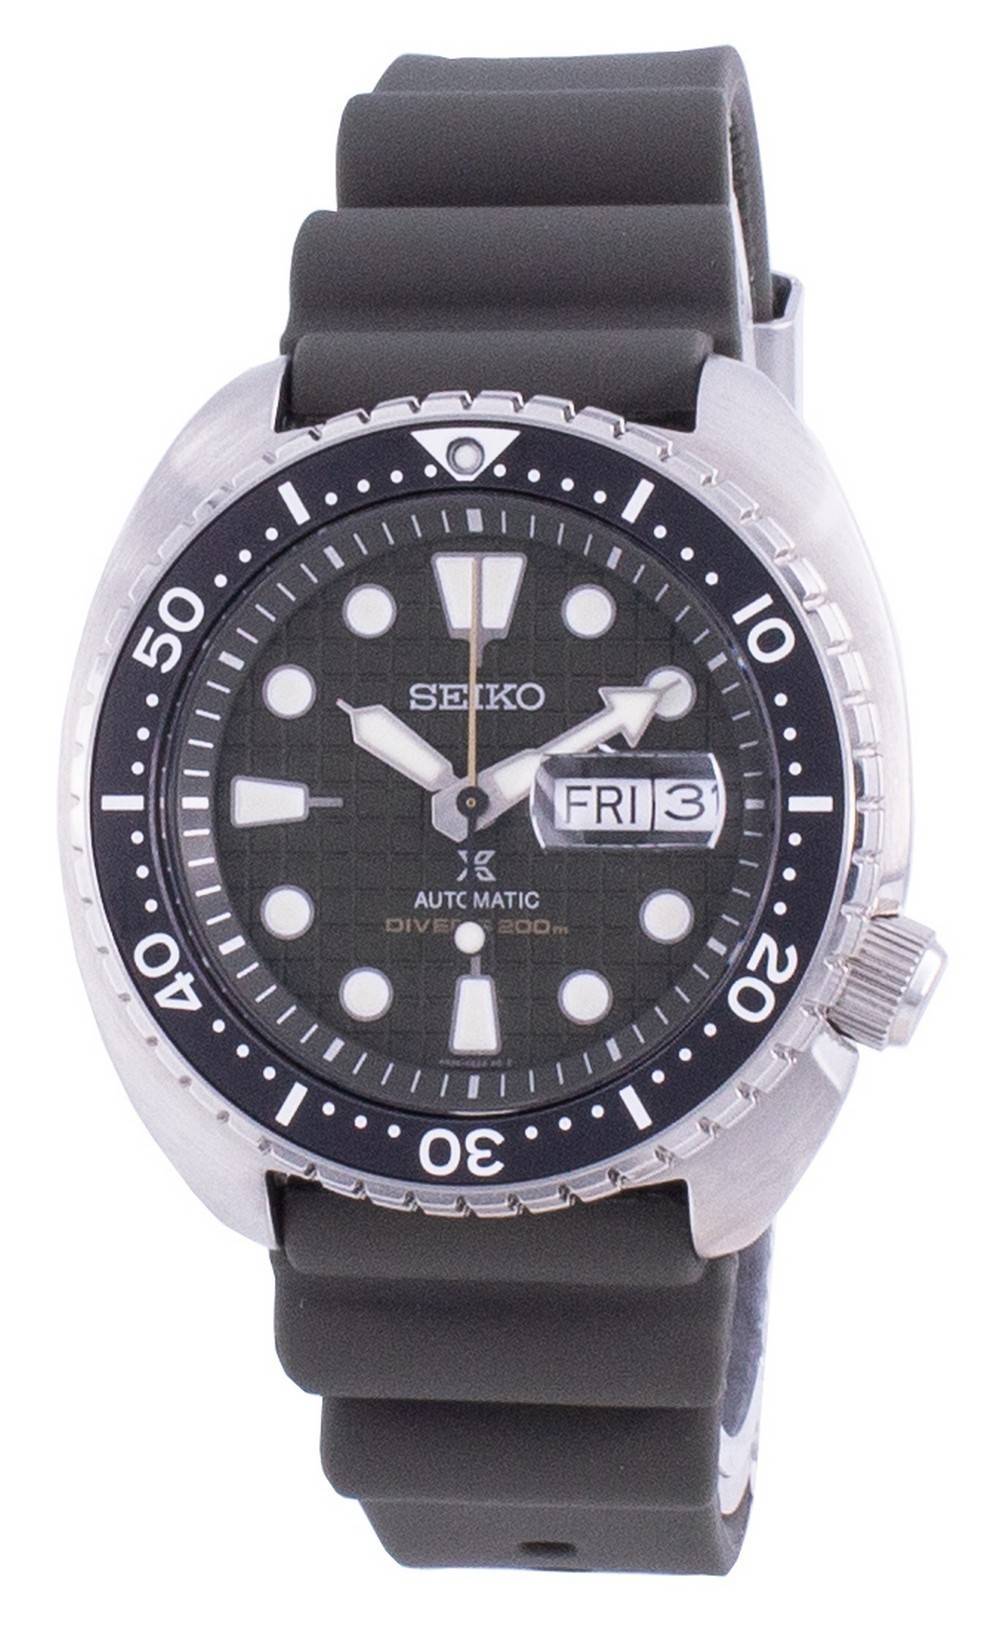 Đồng hồ nam Seiko Prospex King Turtle Diver's Automatic SRPE05 SRPE05K1  SRPE05K 200M vi